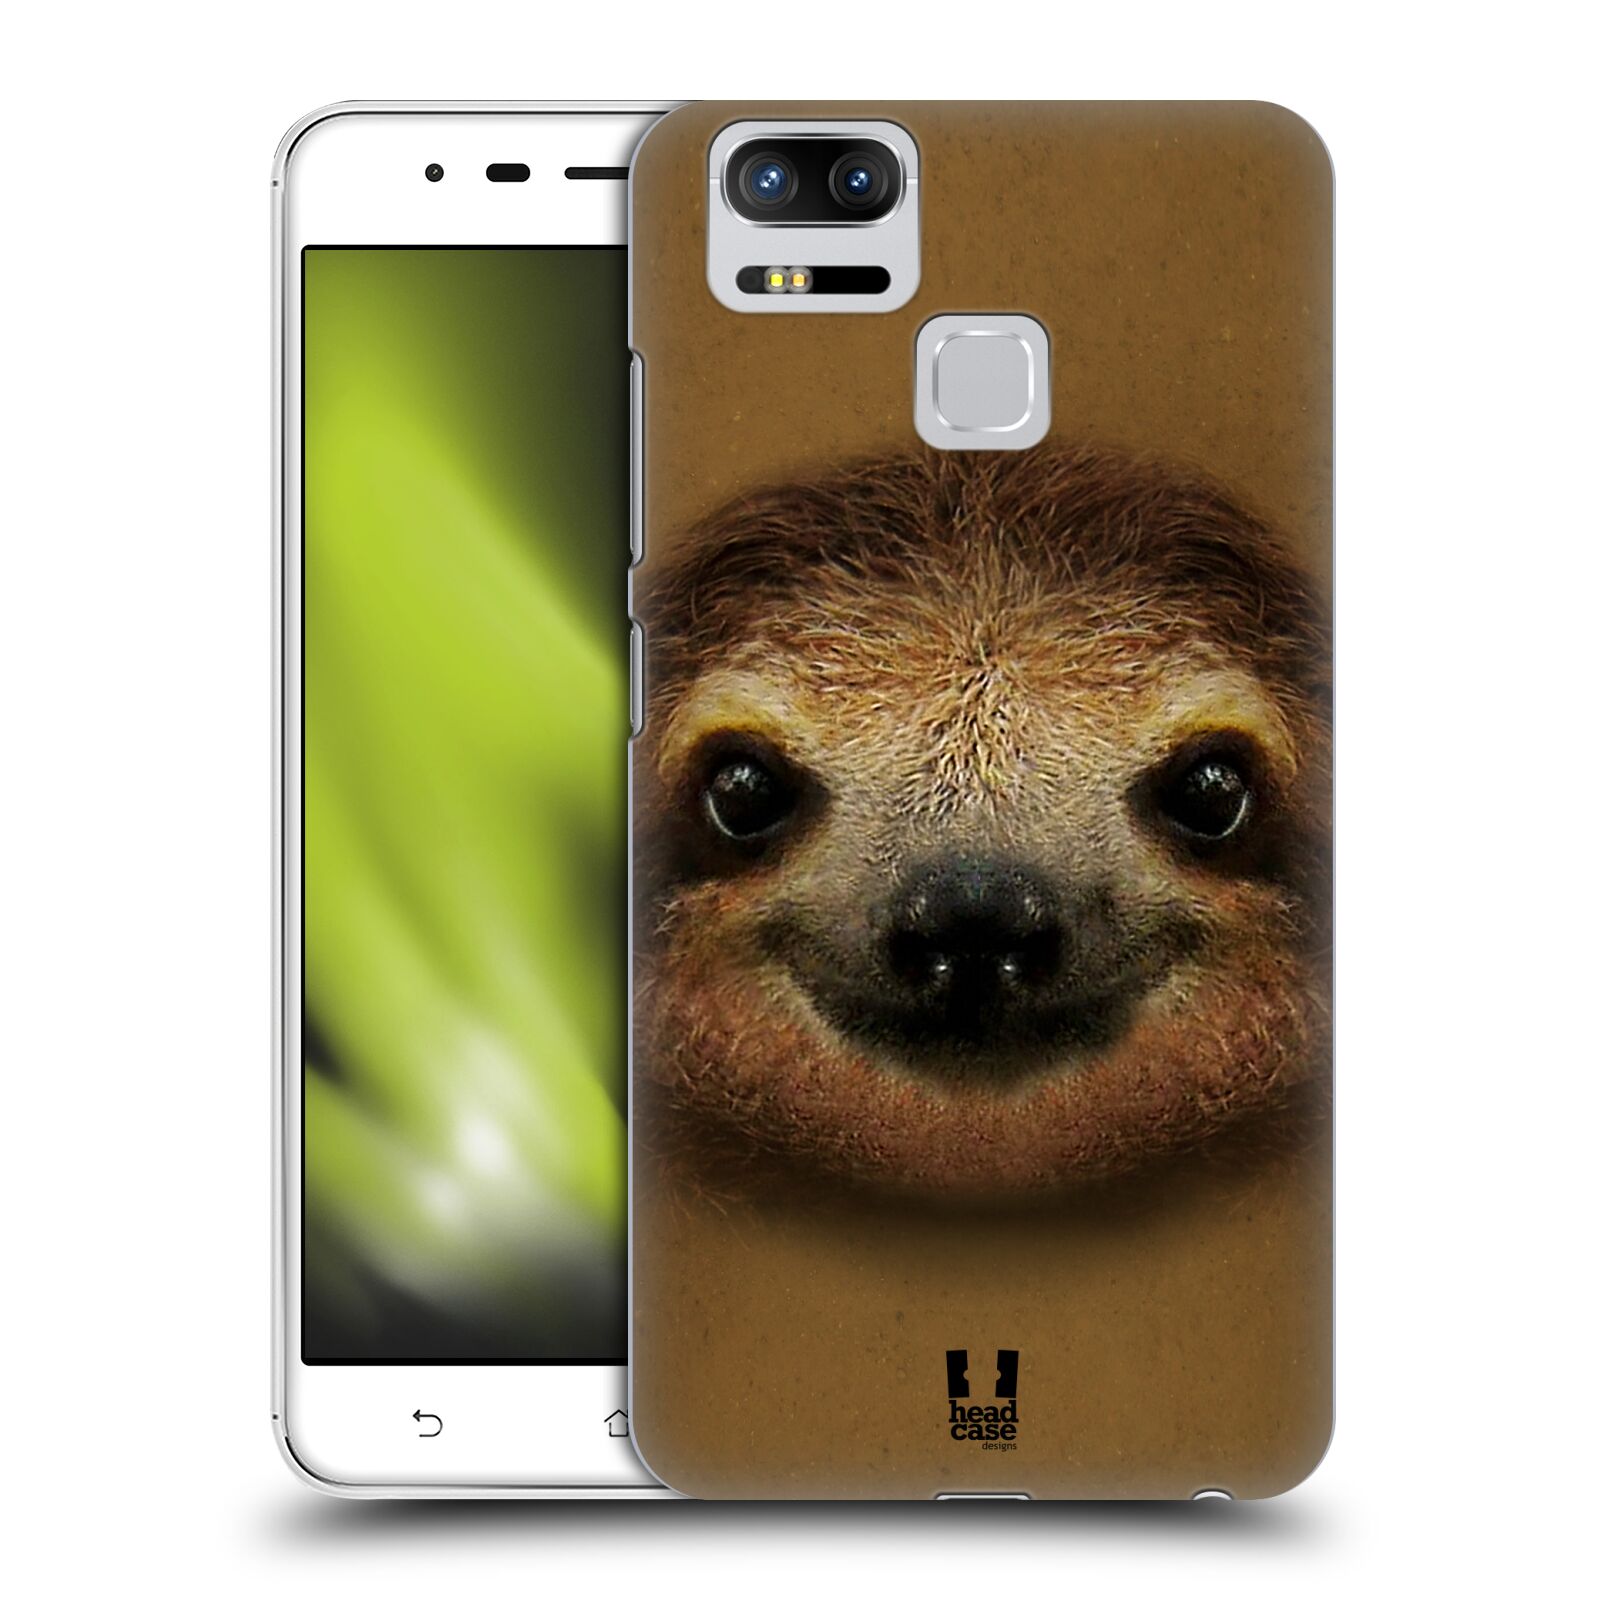 HEAD CASE plastový obal na mobil Asus Zenfone 3 Zoom ZE553KL vzor Zvířecí tváře 2 lenochod